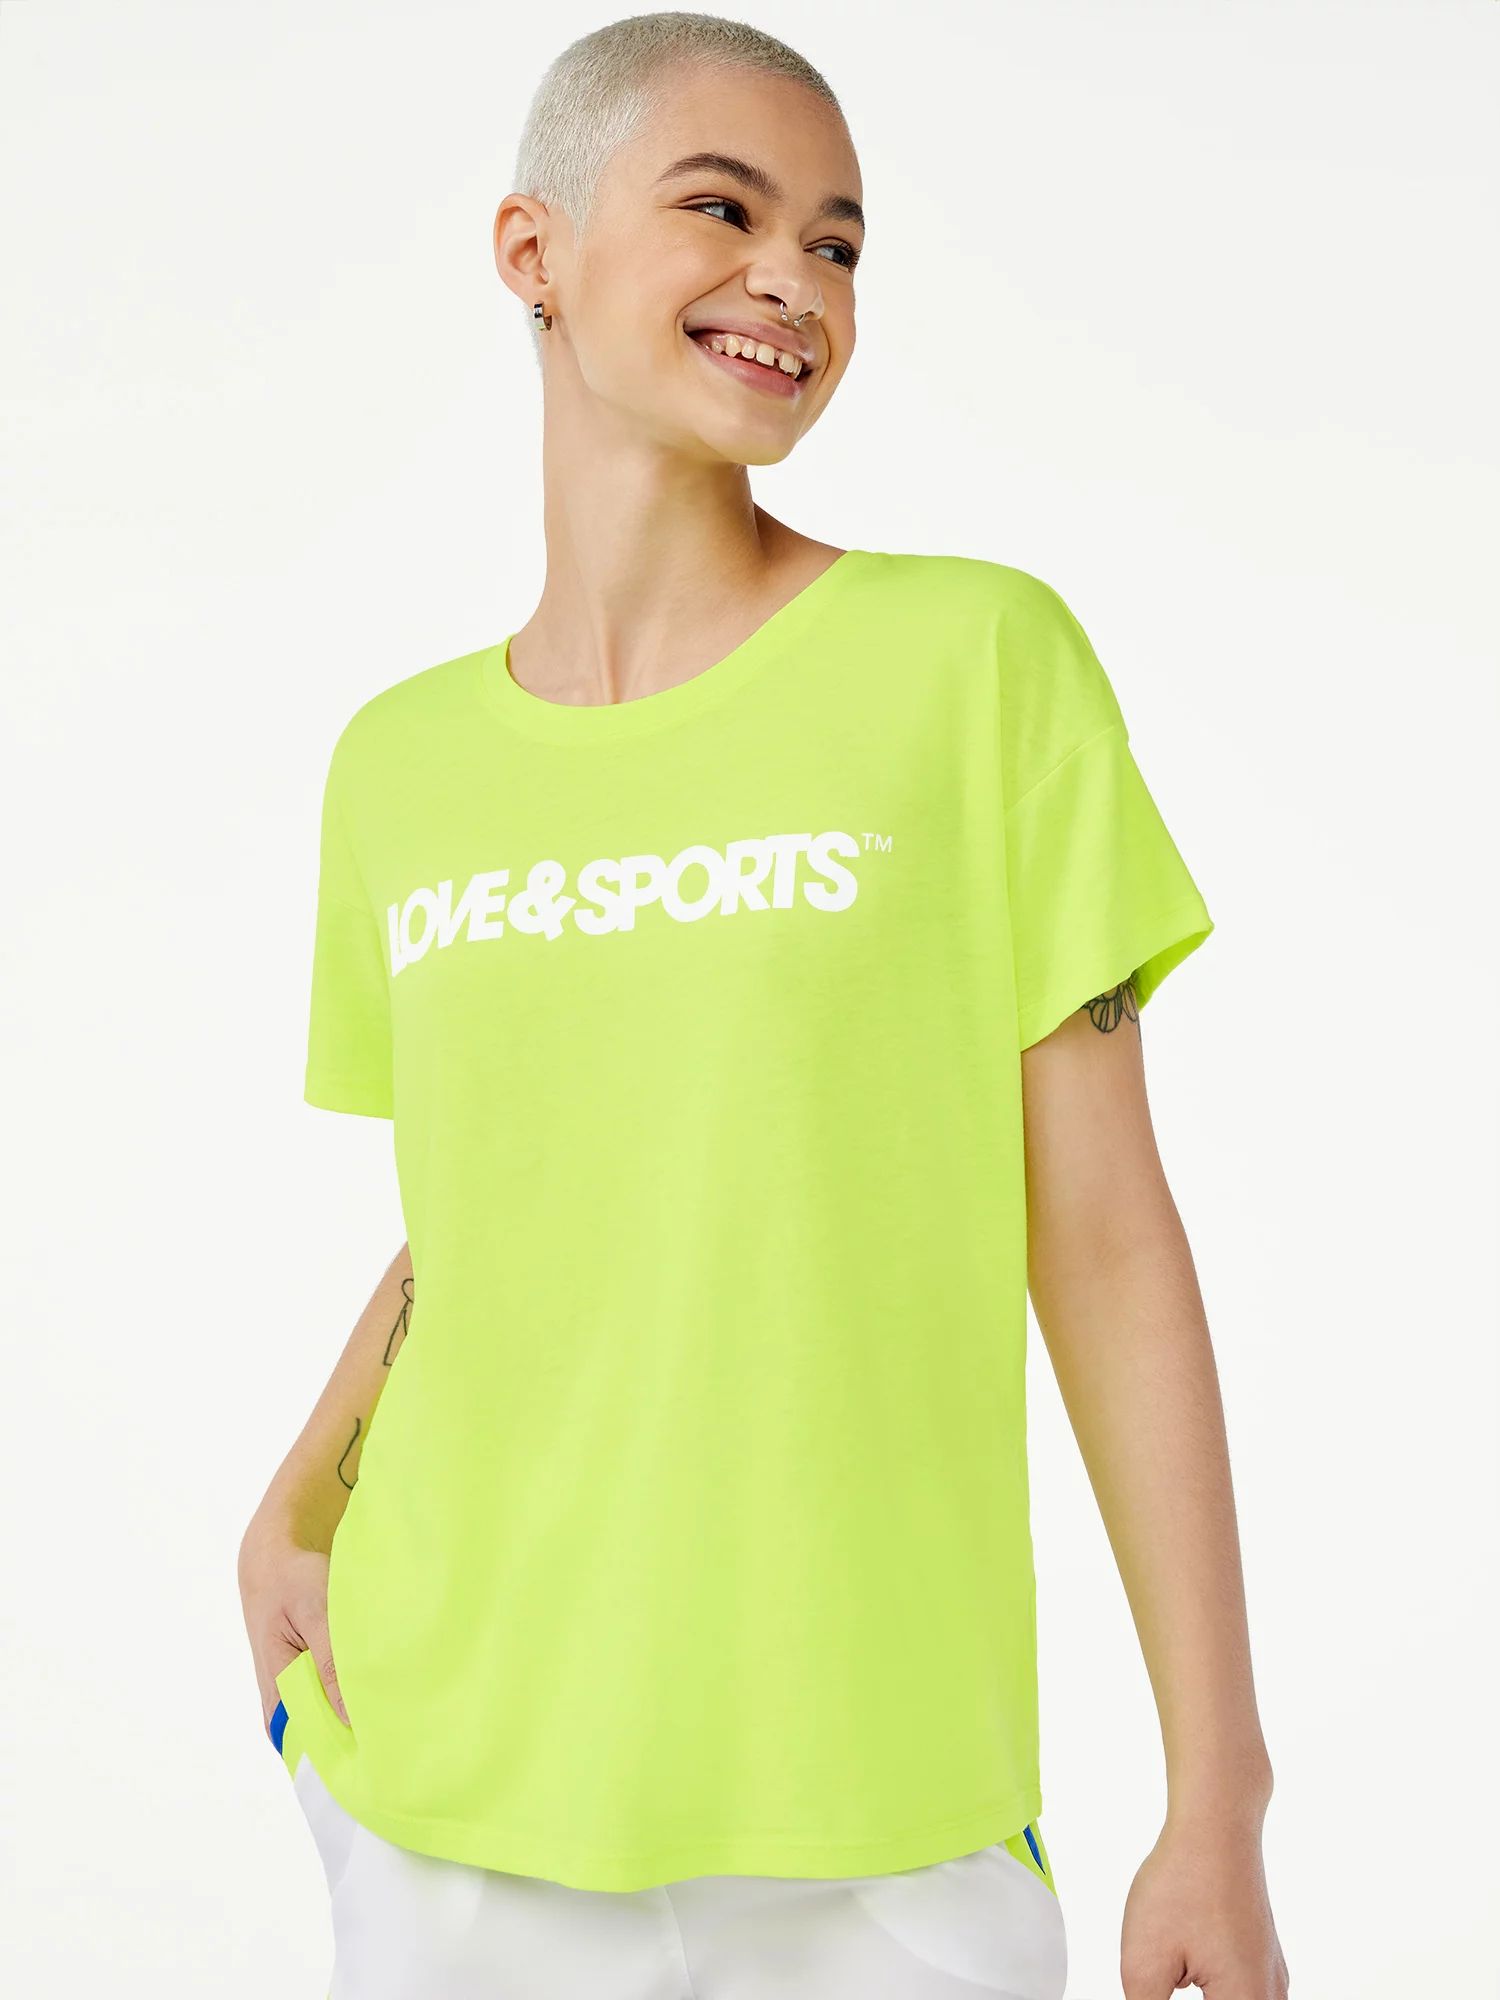 Love & Sports Women's Jersey Logo T-Shirt - Walmart.com | Walmart (US)